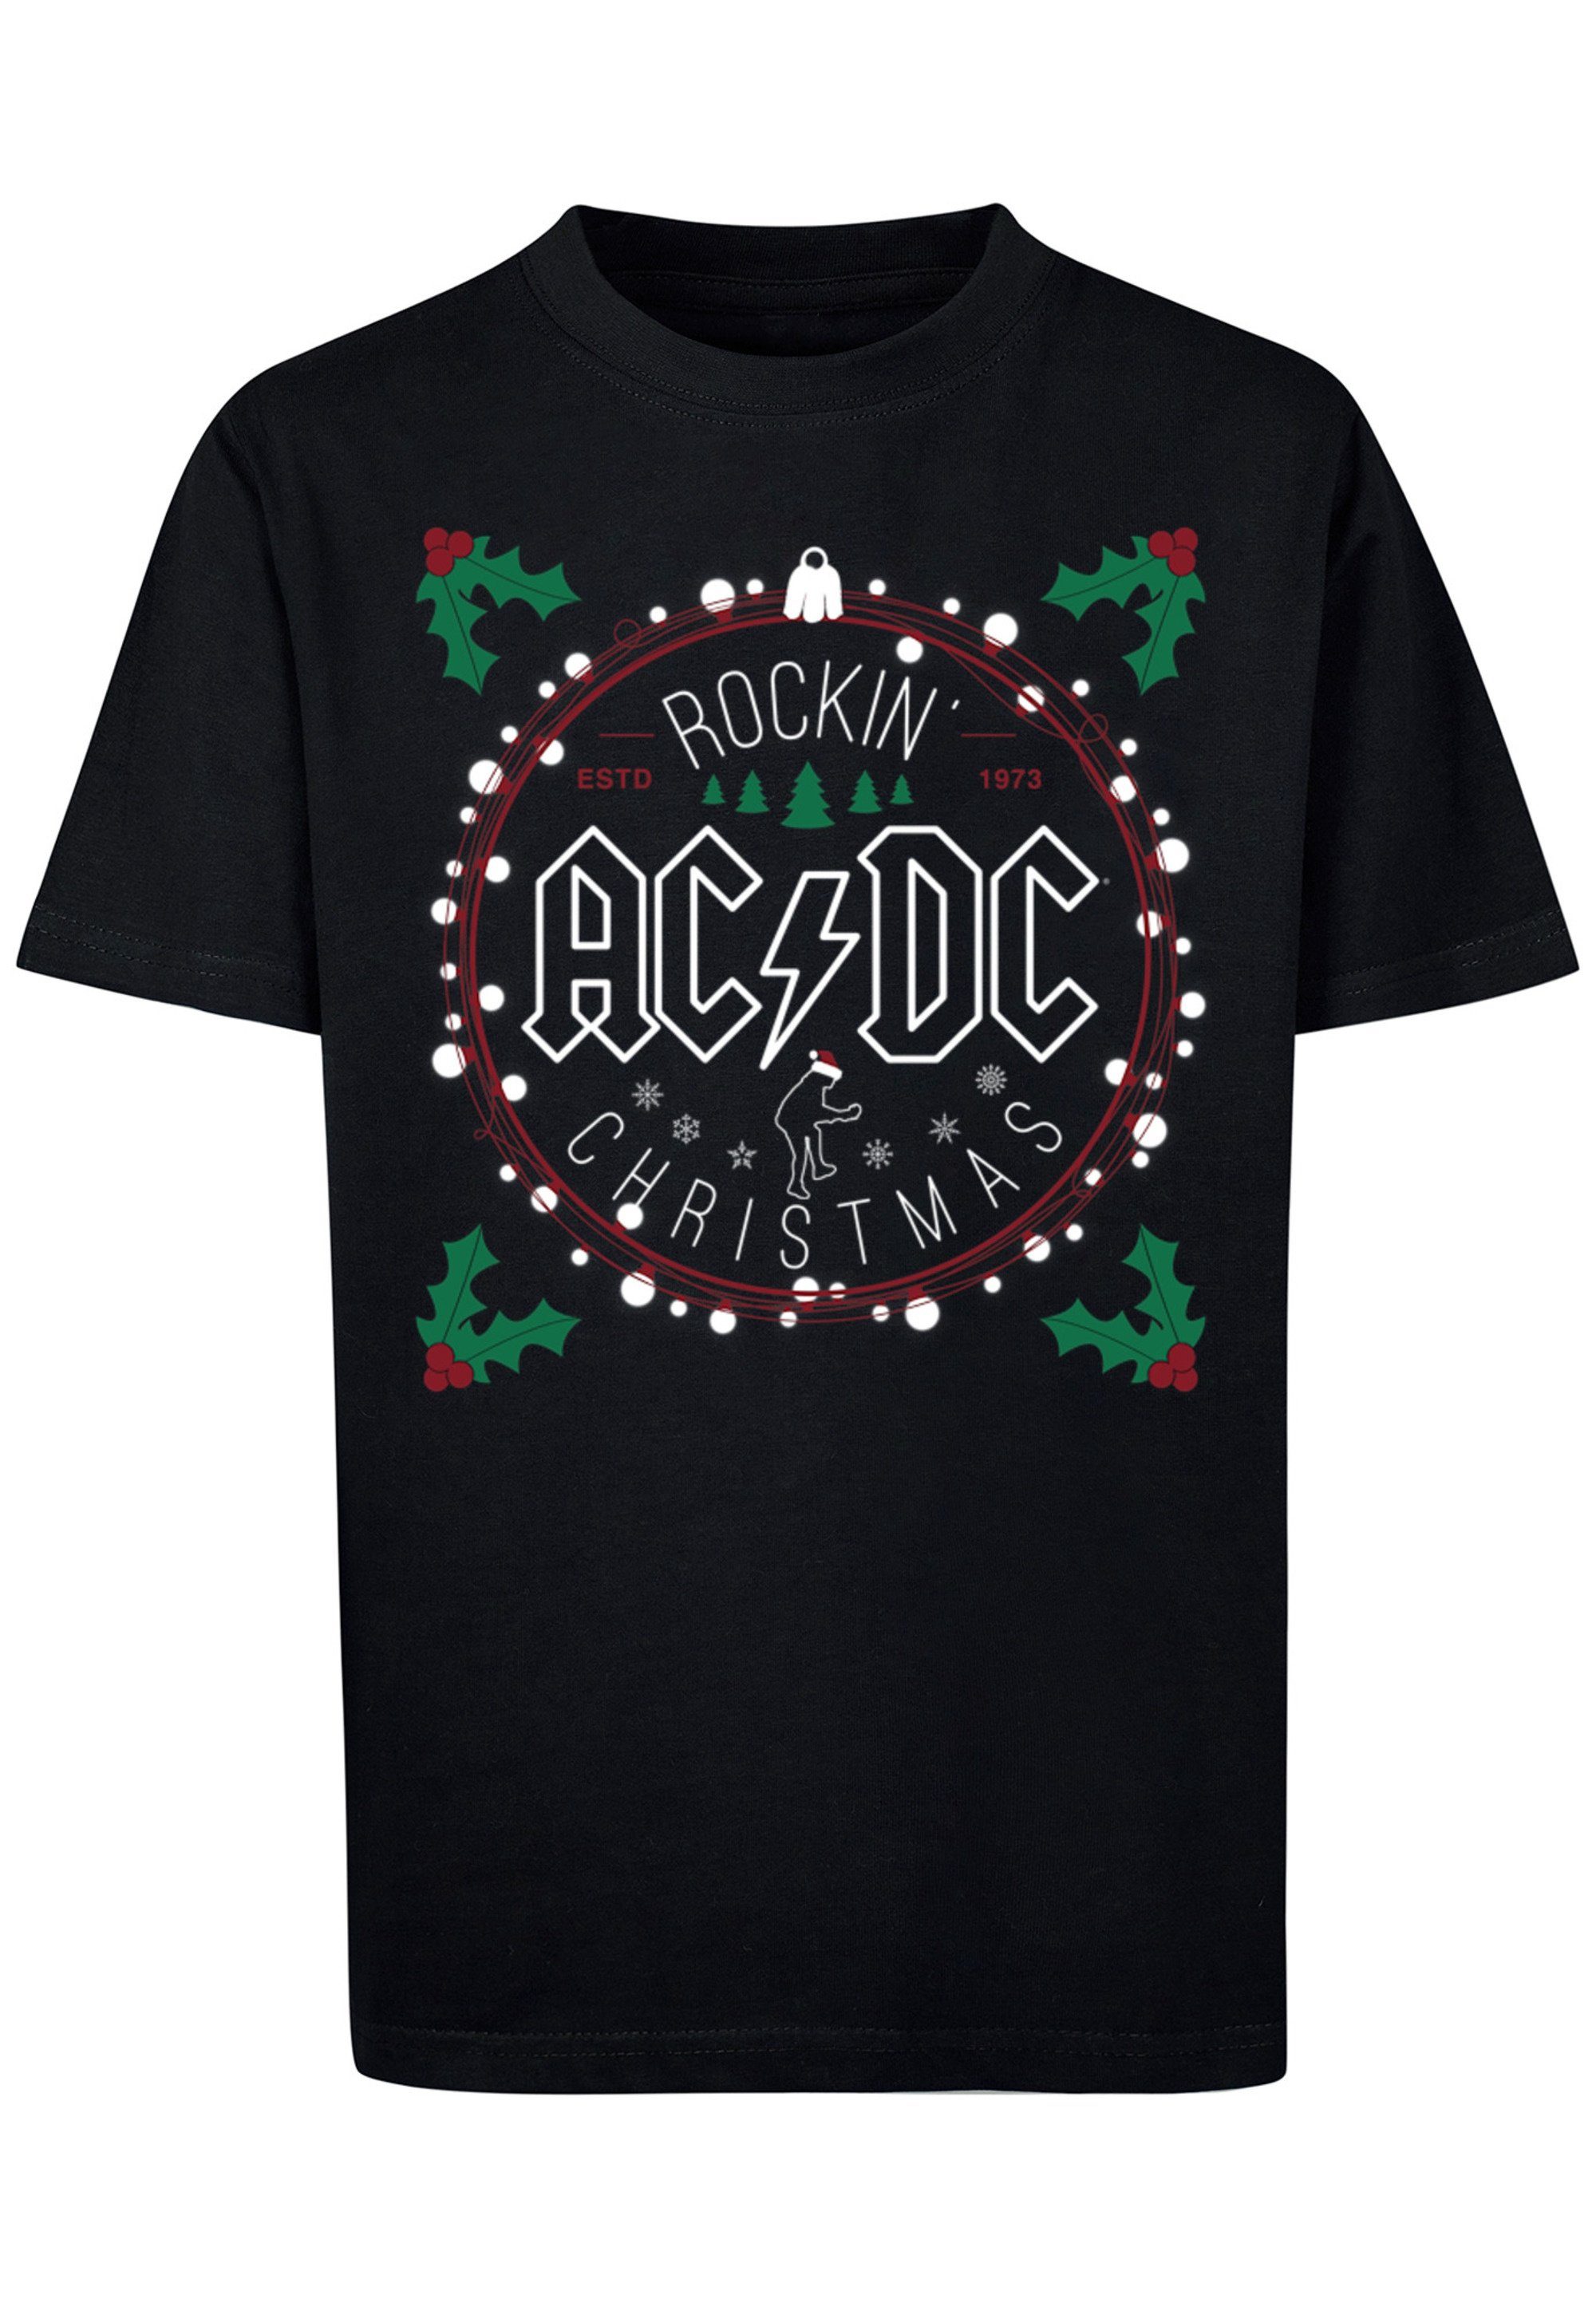 hohem Print, Tragekomfort Baumwollstoff F4NT4STIC weicher T-Shirt mit Sehr ACDC Christmas Weihnachten